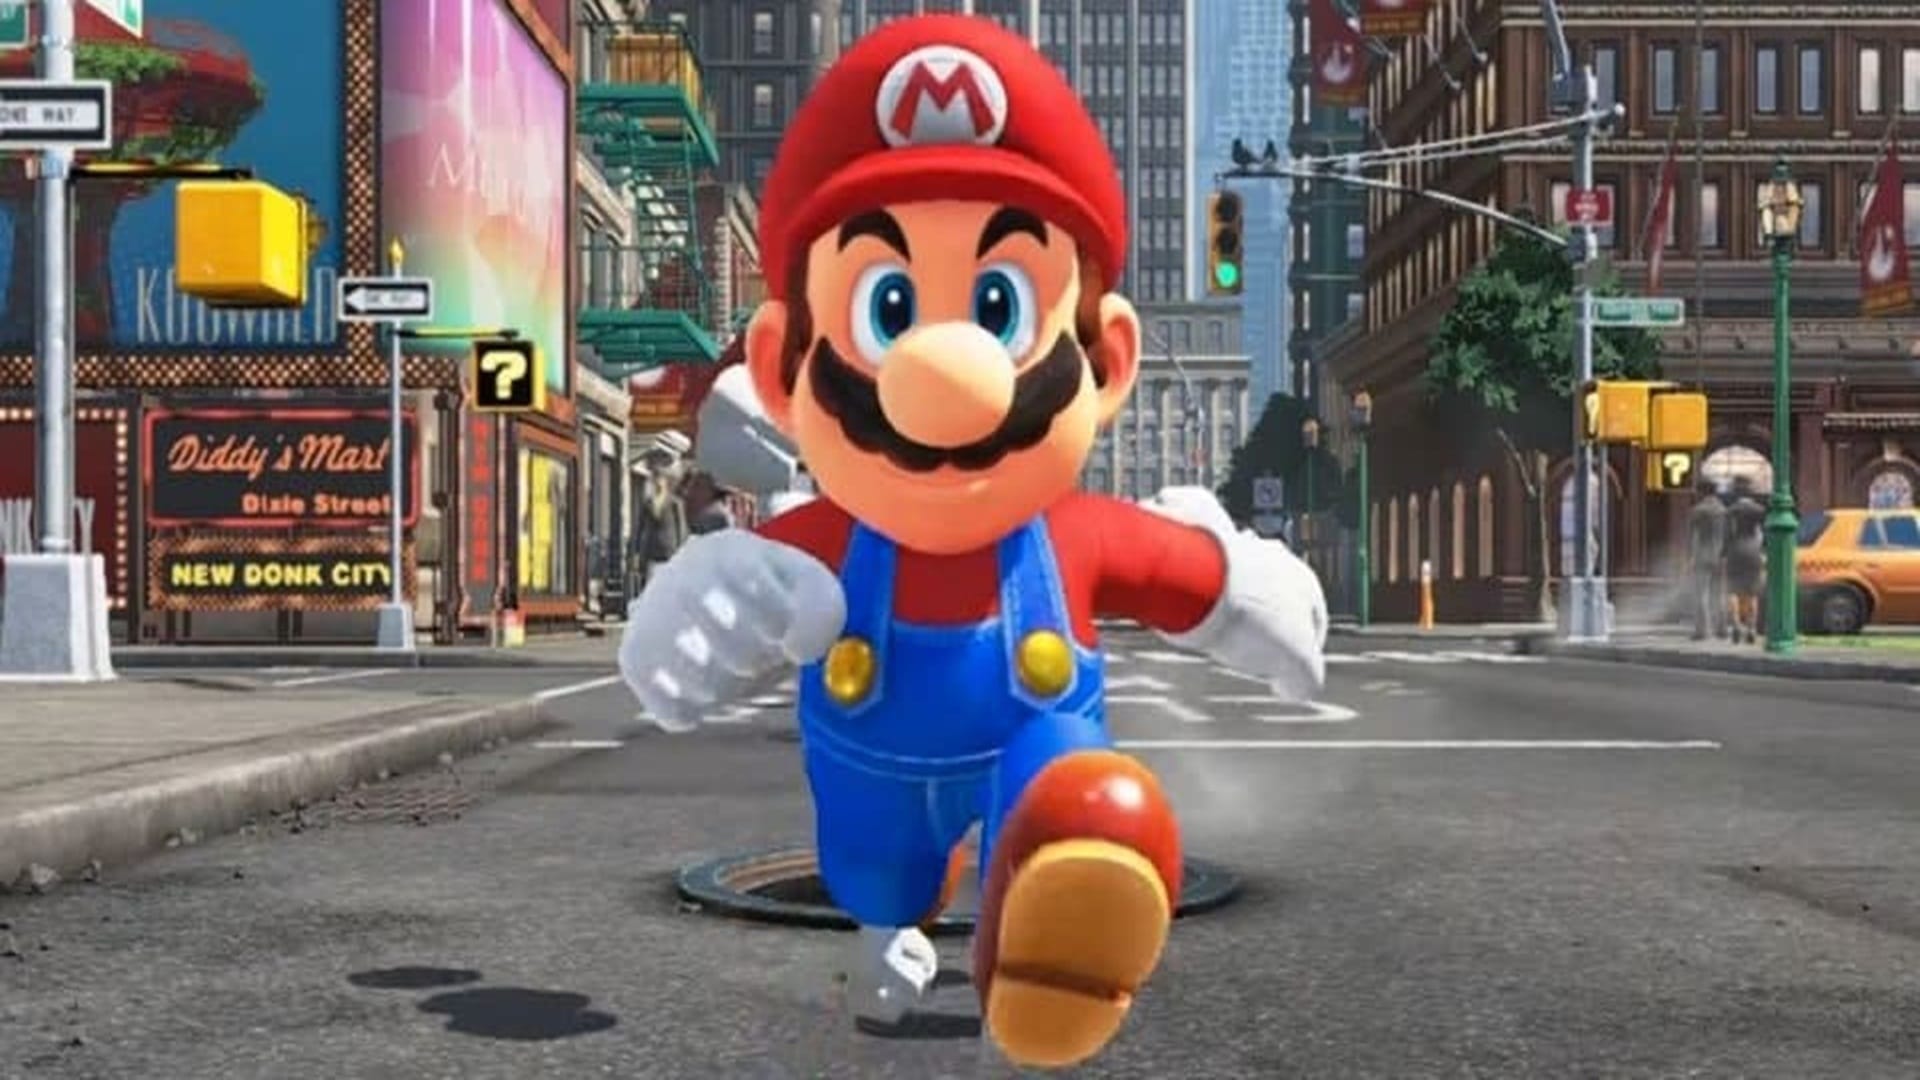 Charles Martinet, la voz de Mario Bros, confiesa que a veces que sueña como Mario, GamersRD